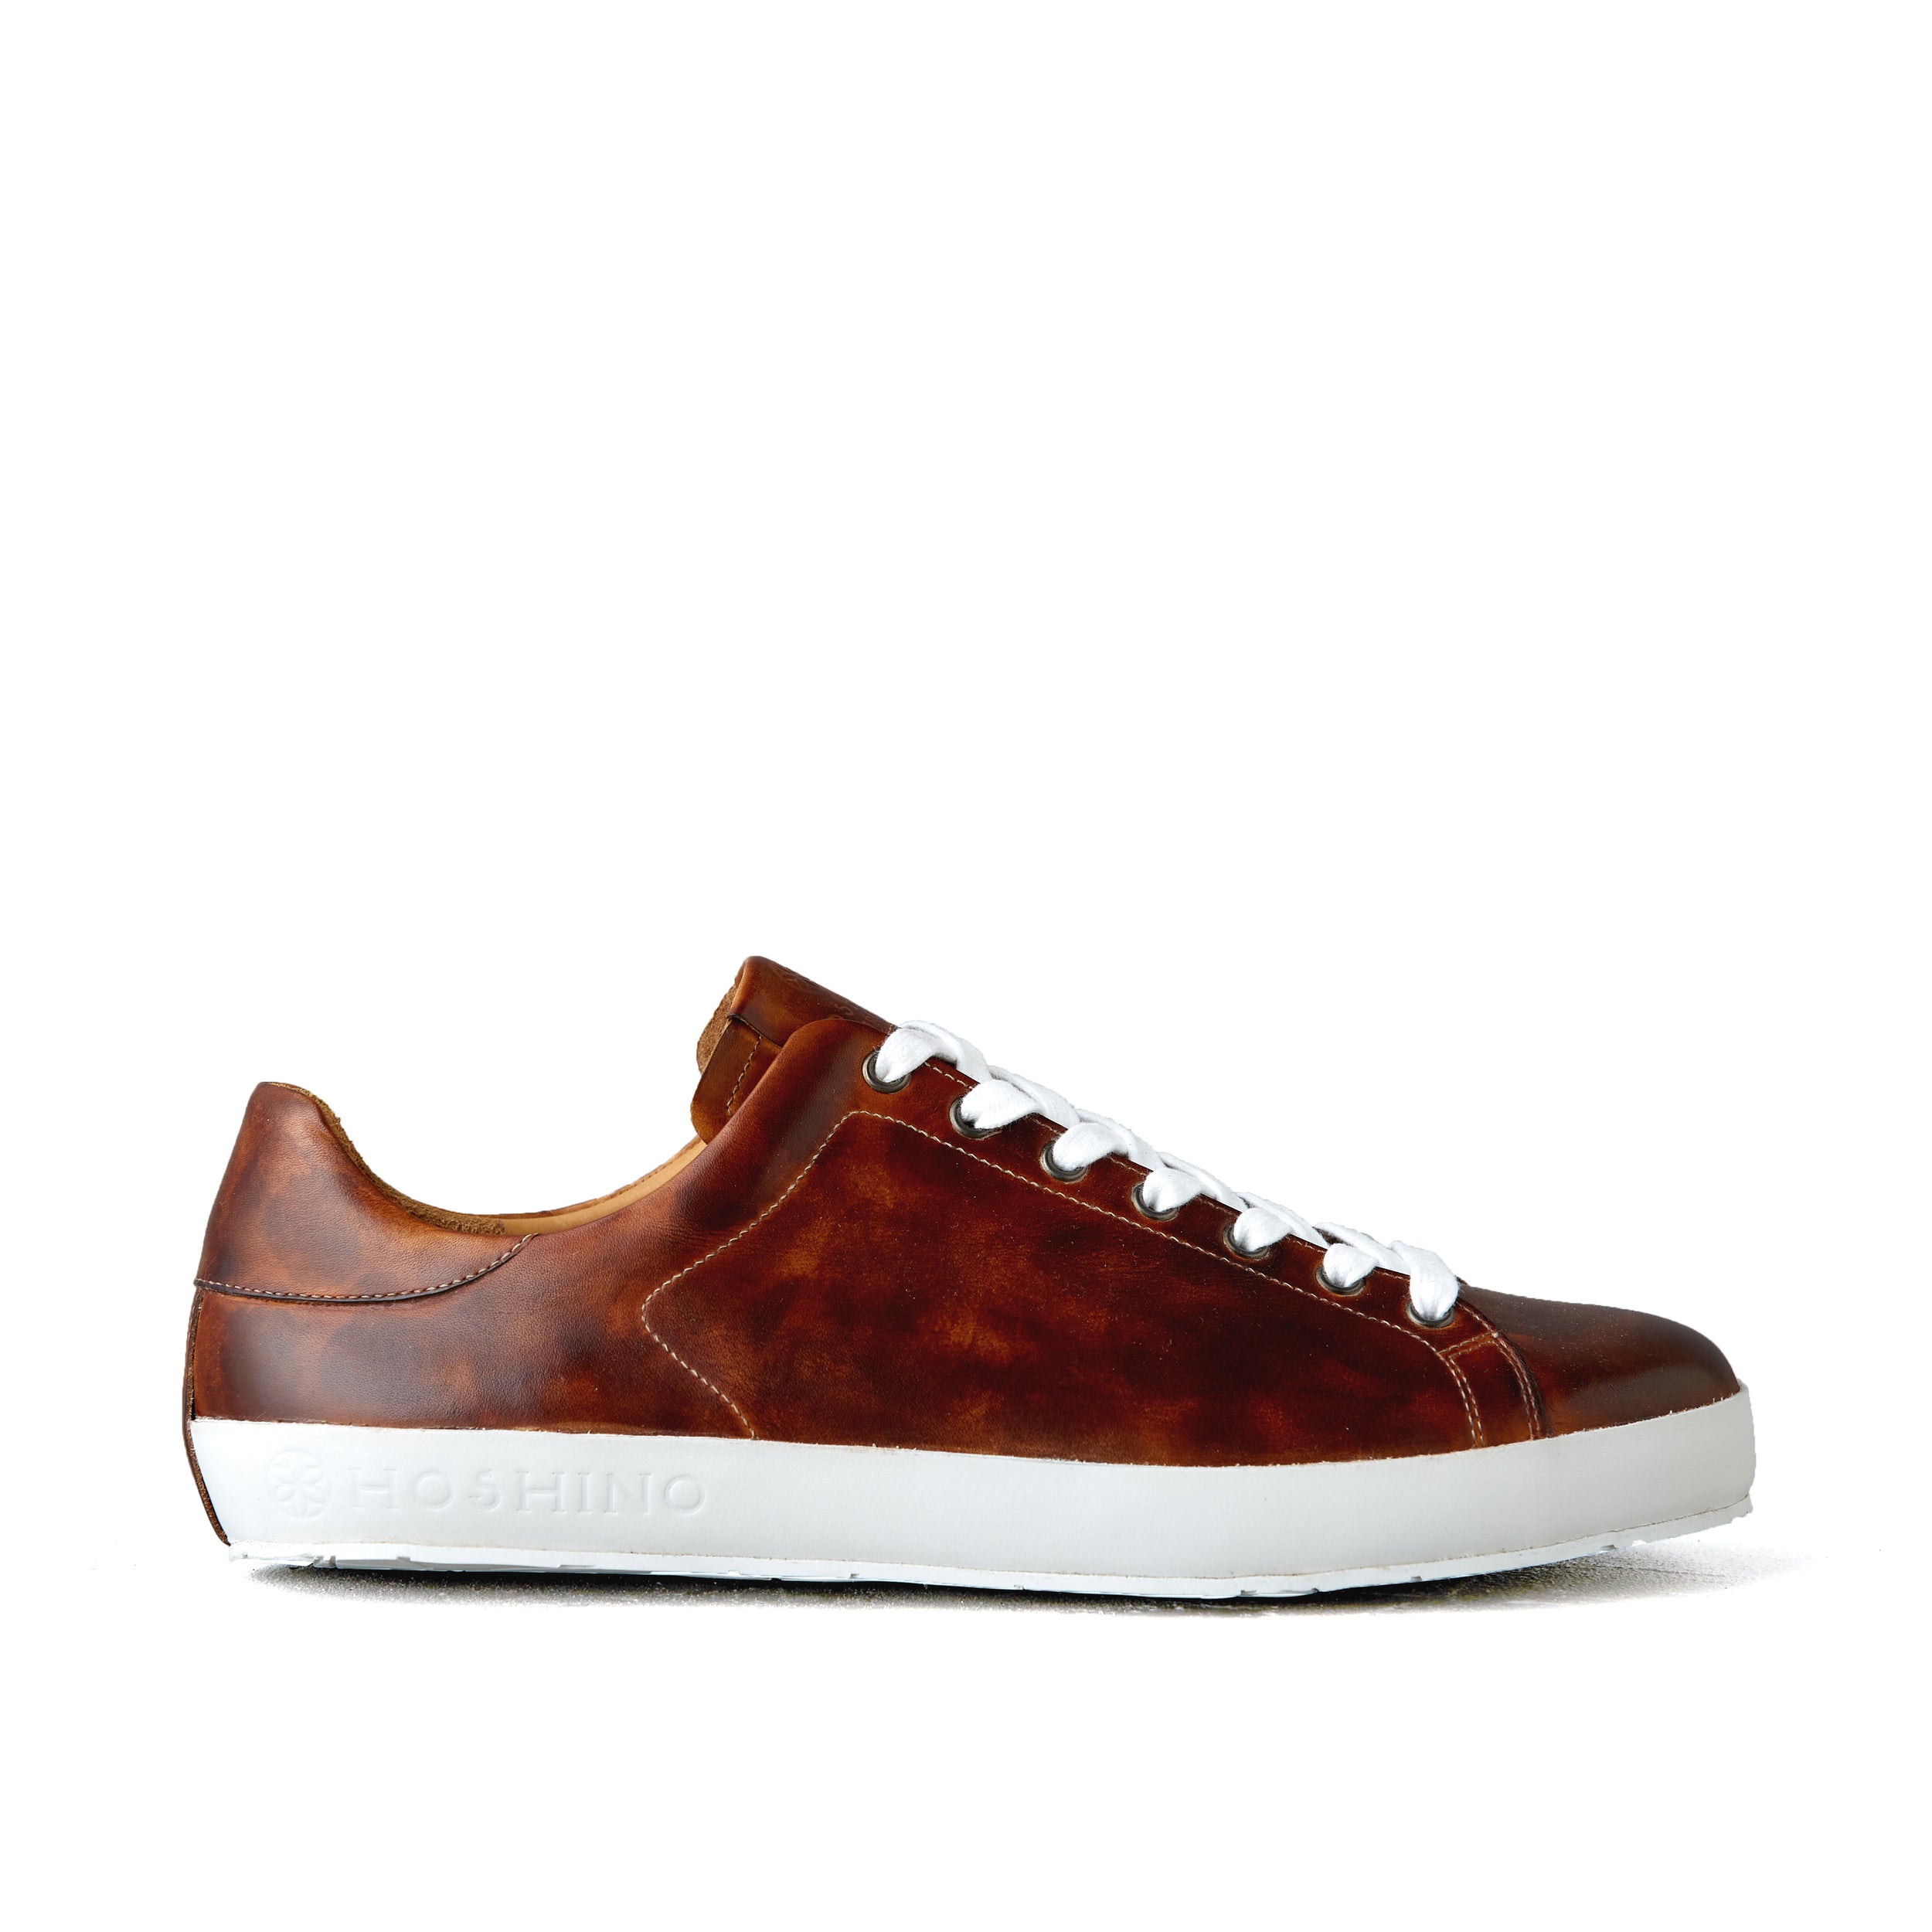 [men's] Liberte - low-top sneakers - brown on brown patina calfskin